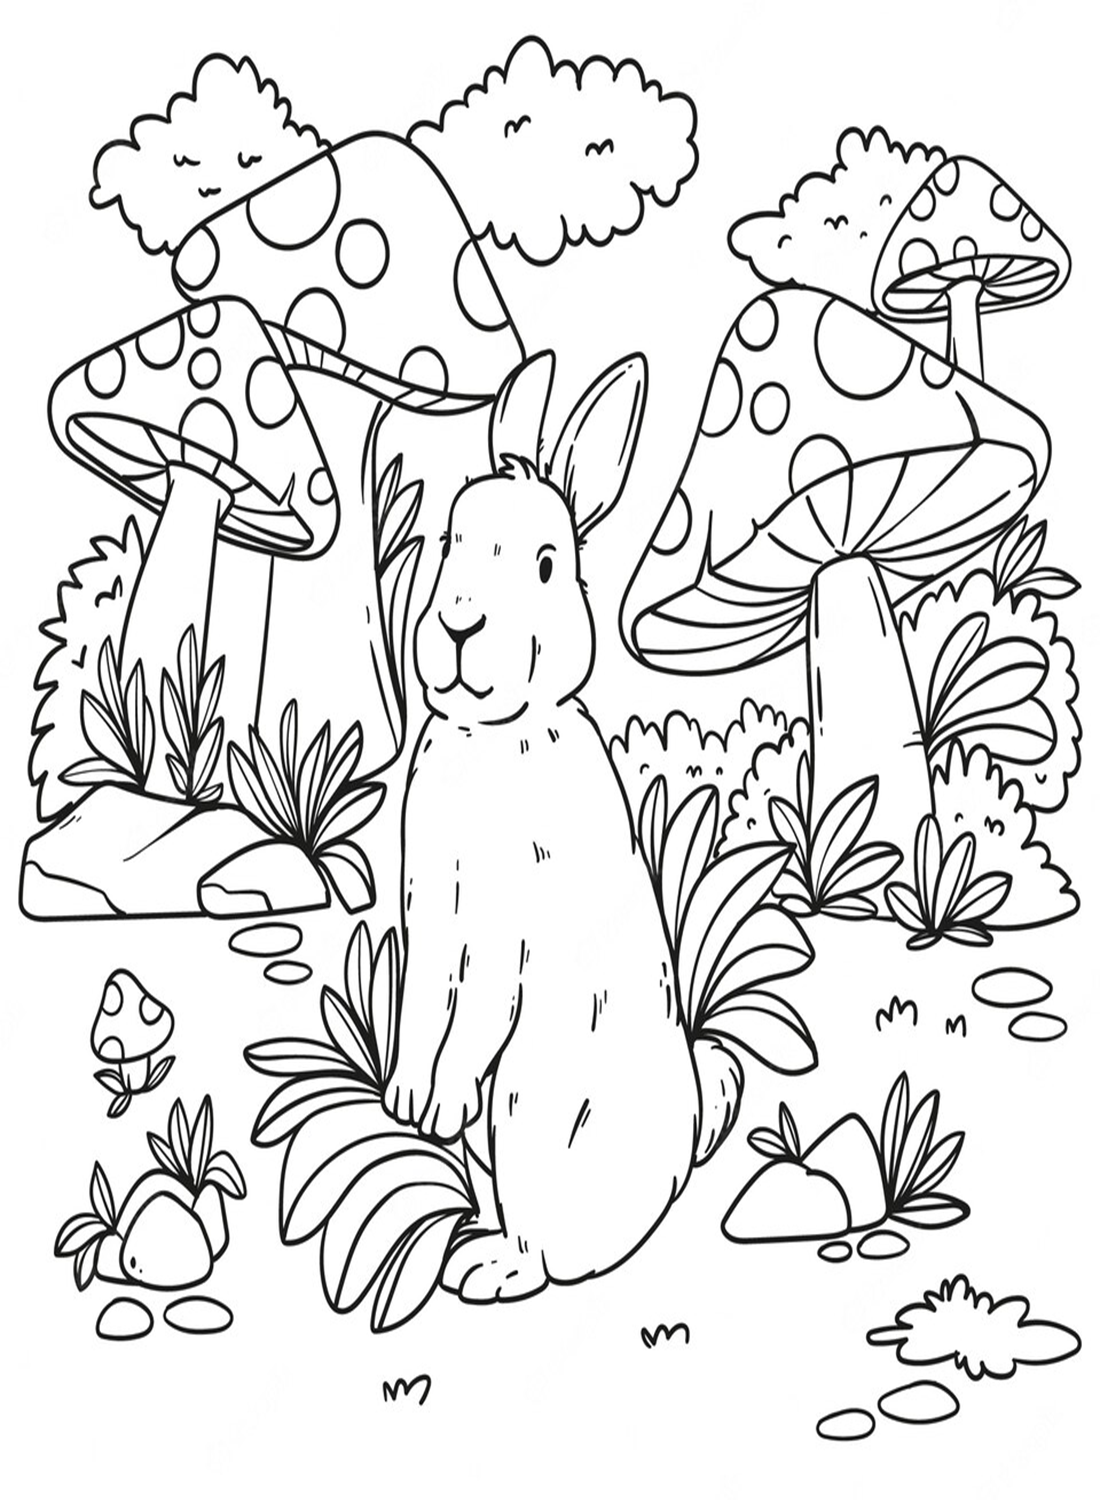 蘑菇林里的兔子 from 兔子